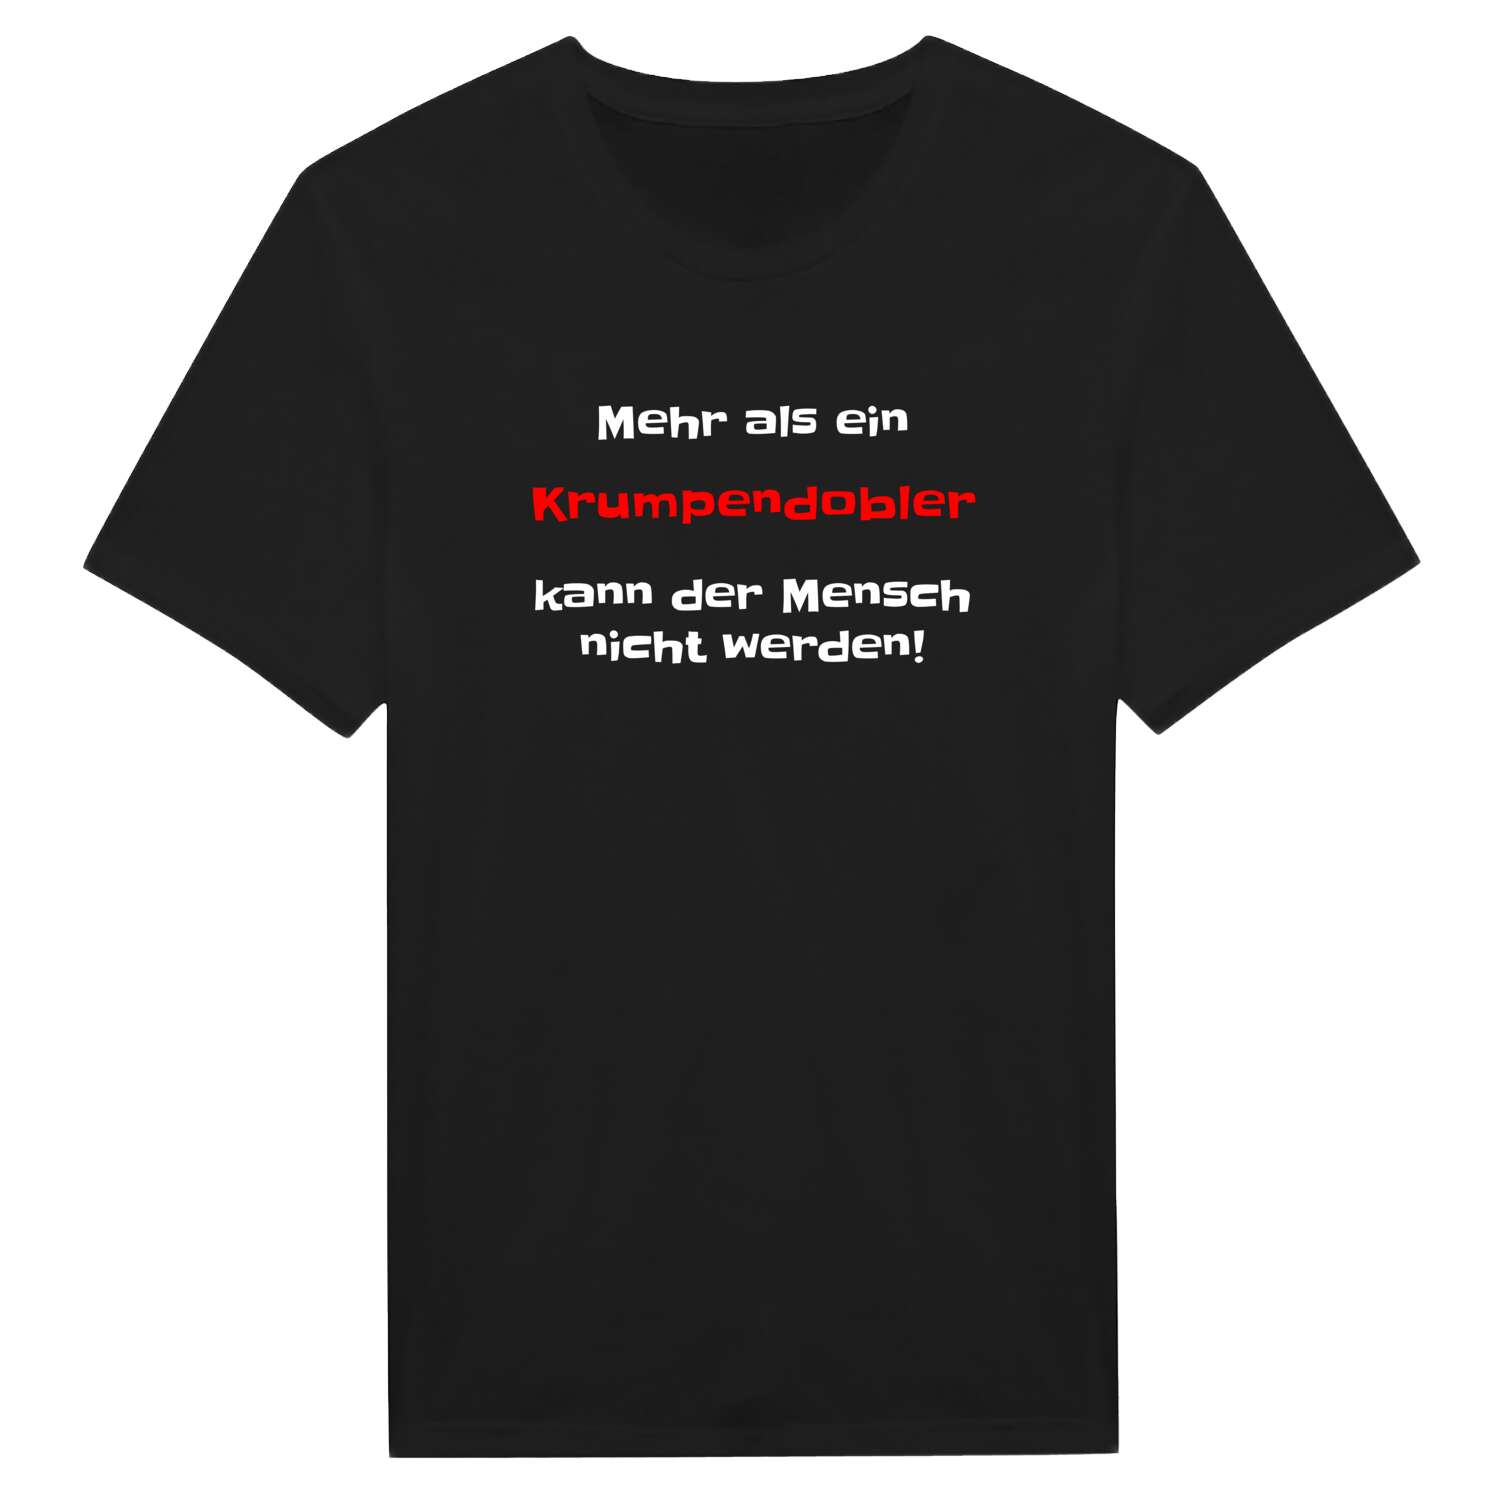 Krumpendobl T-Shirt »Mehr als ein«